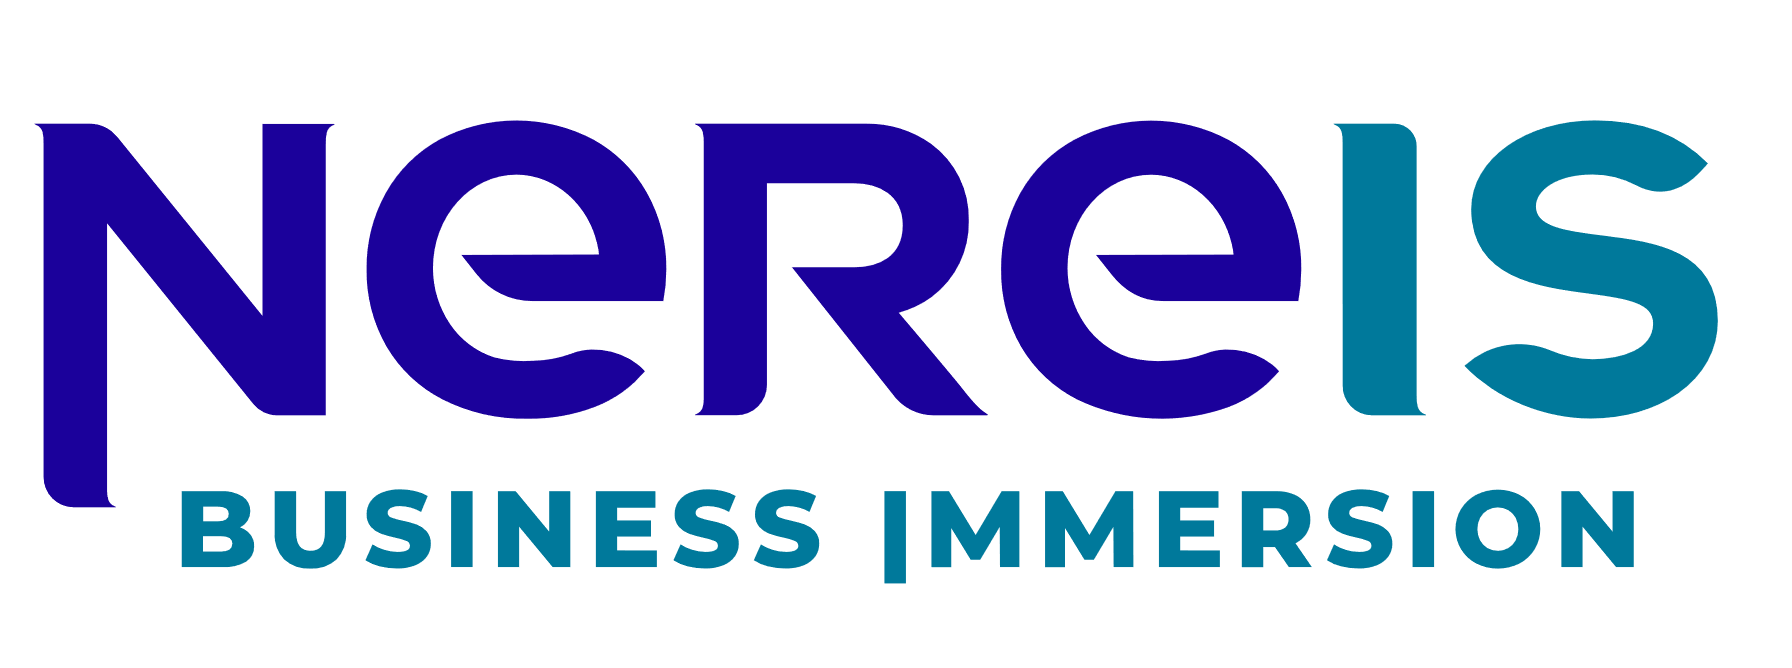 Nereis Business Immersion - Partenariat